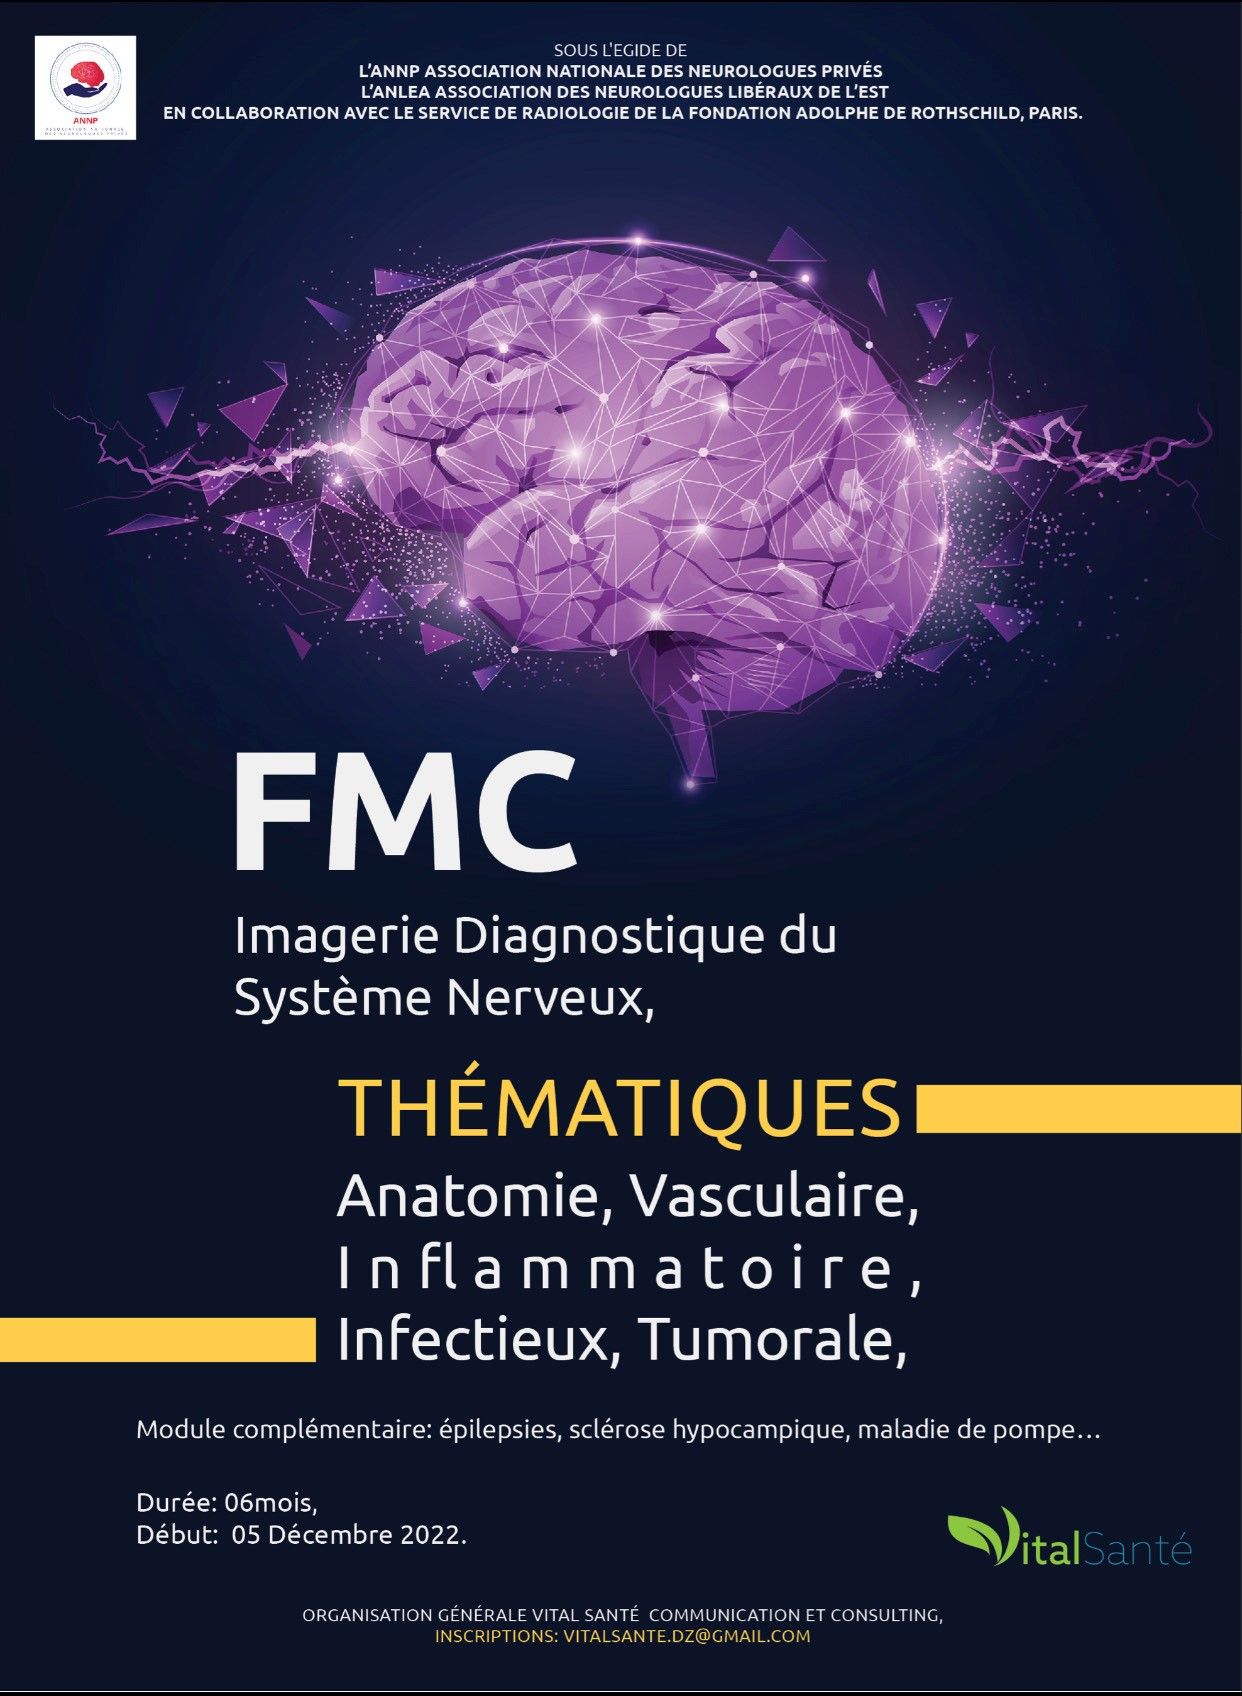 1ère FMC en neuroradiologie Imagerie Diagnostique du Système nerveux affiche